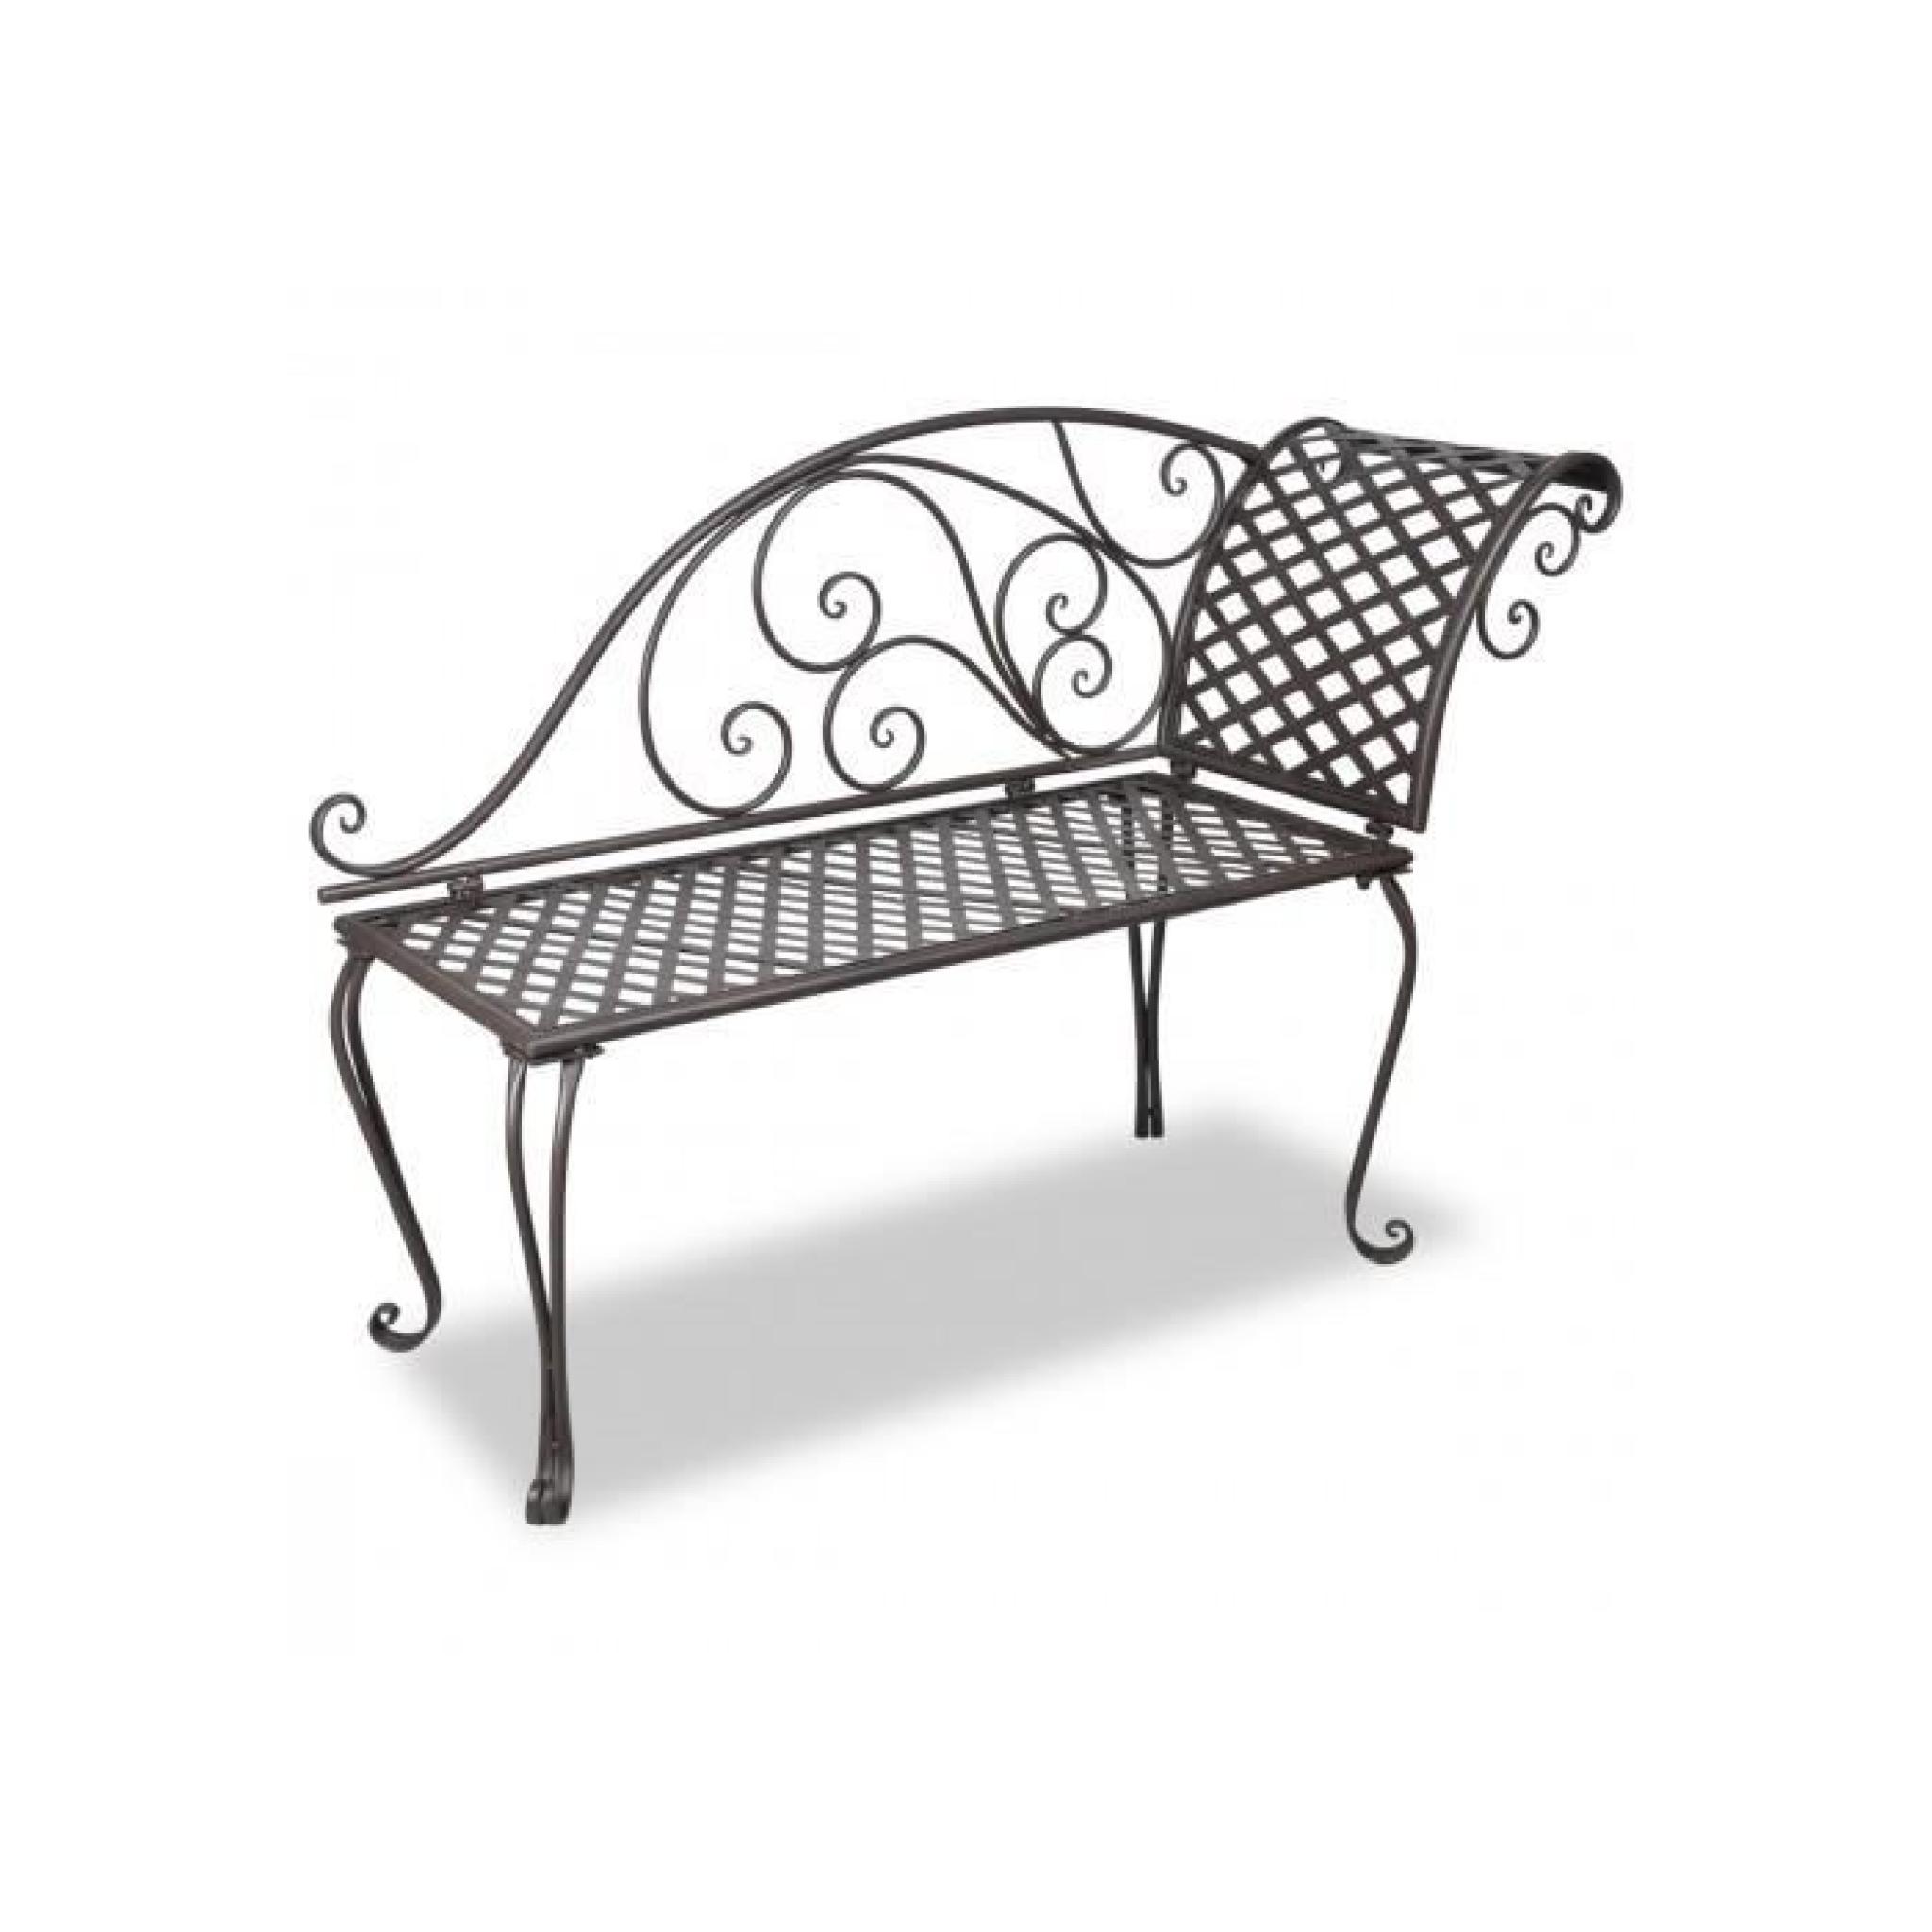 Design courbé pour cette chaise longue en métal